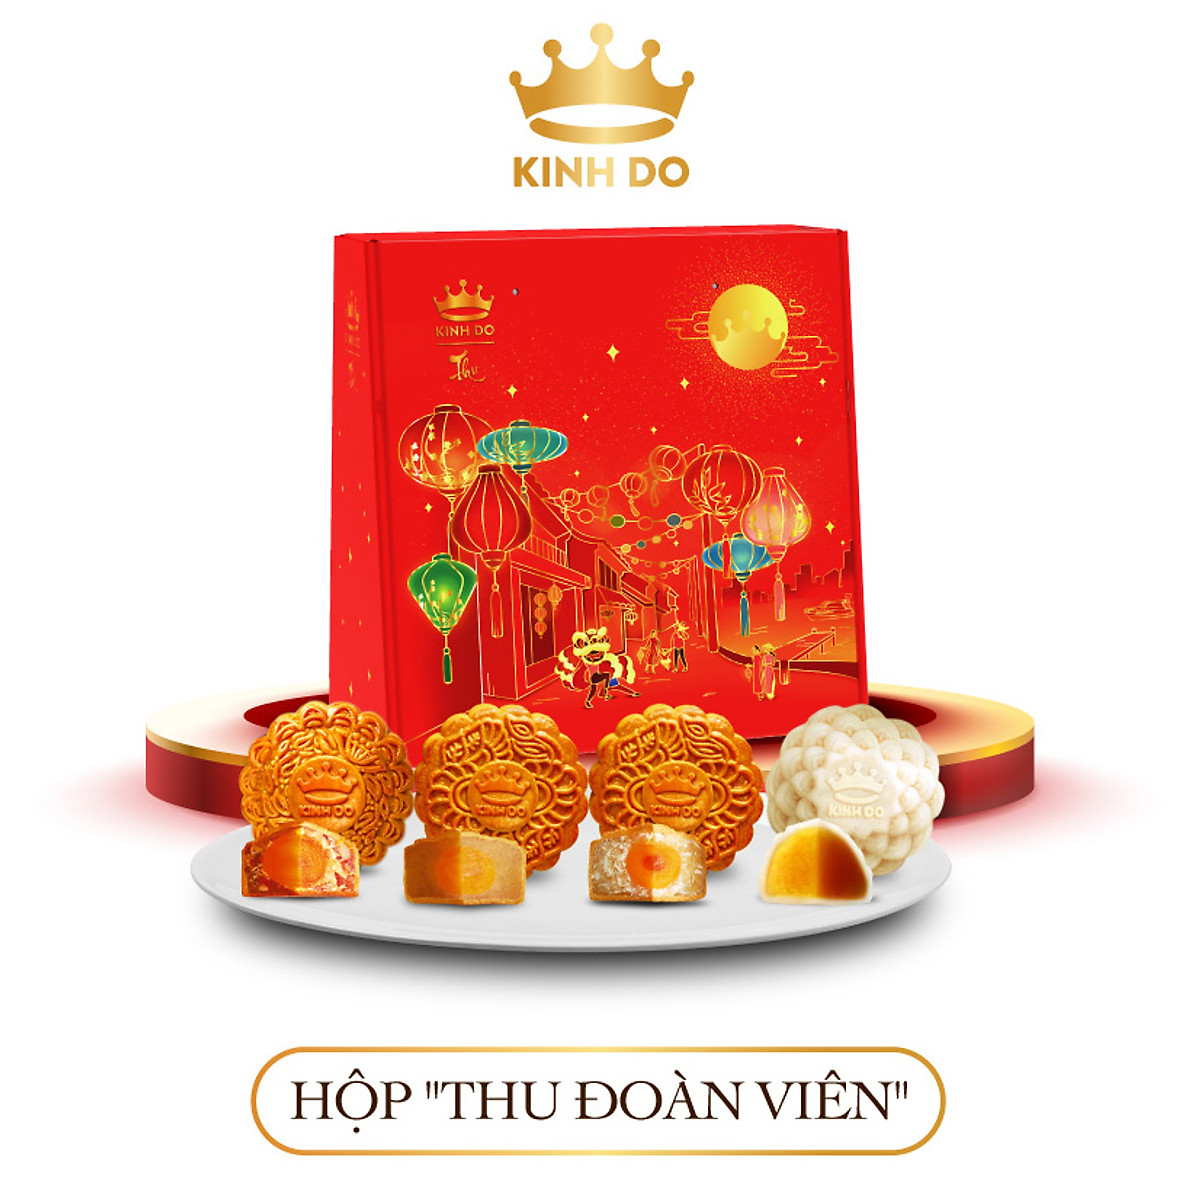 Bánh Trung Thu Kinh Đô - một trong những thương hiệu bánh trung thu hàng đầu Việt Nam, với hương vị đặc trưng và nguồn gốc từ thiên nhiên. Hãy thưởng thức và cảm nhận sự hấp dẫn từ những chiếc bánh này.